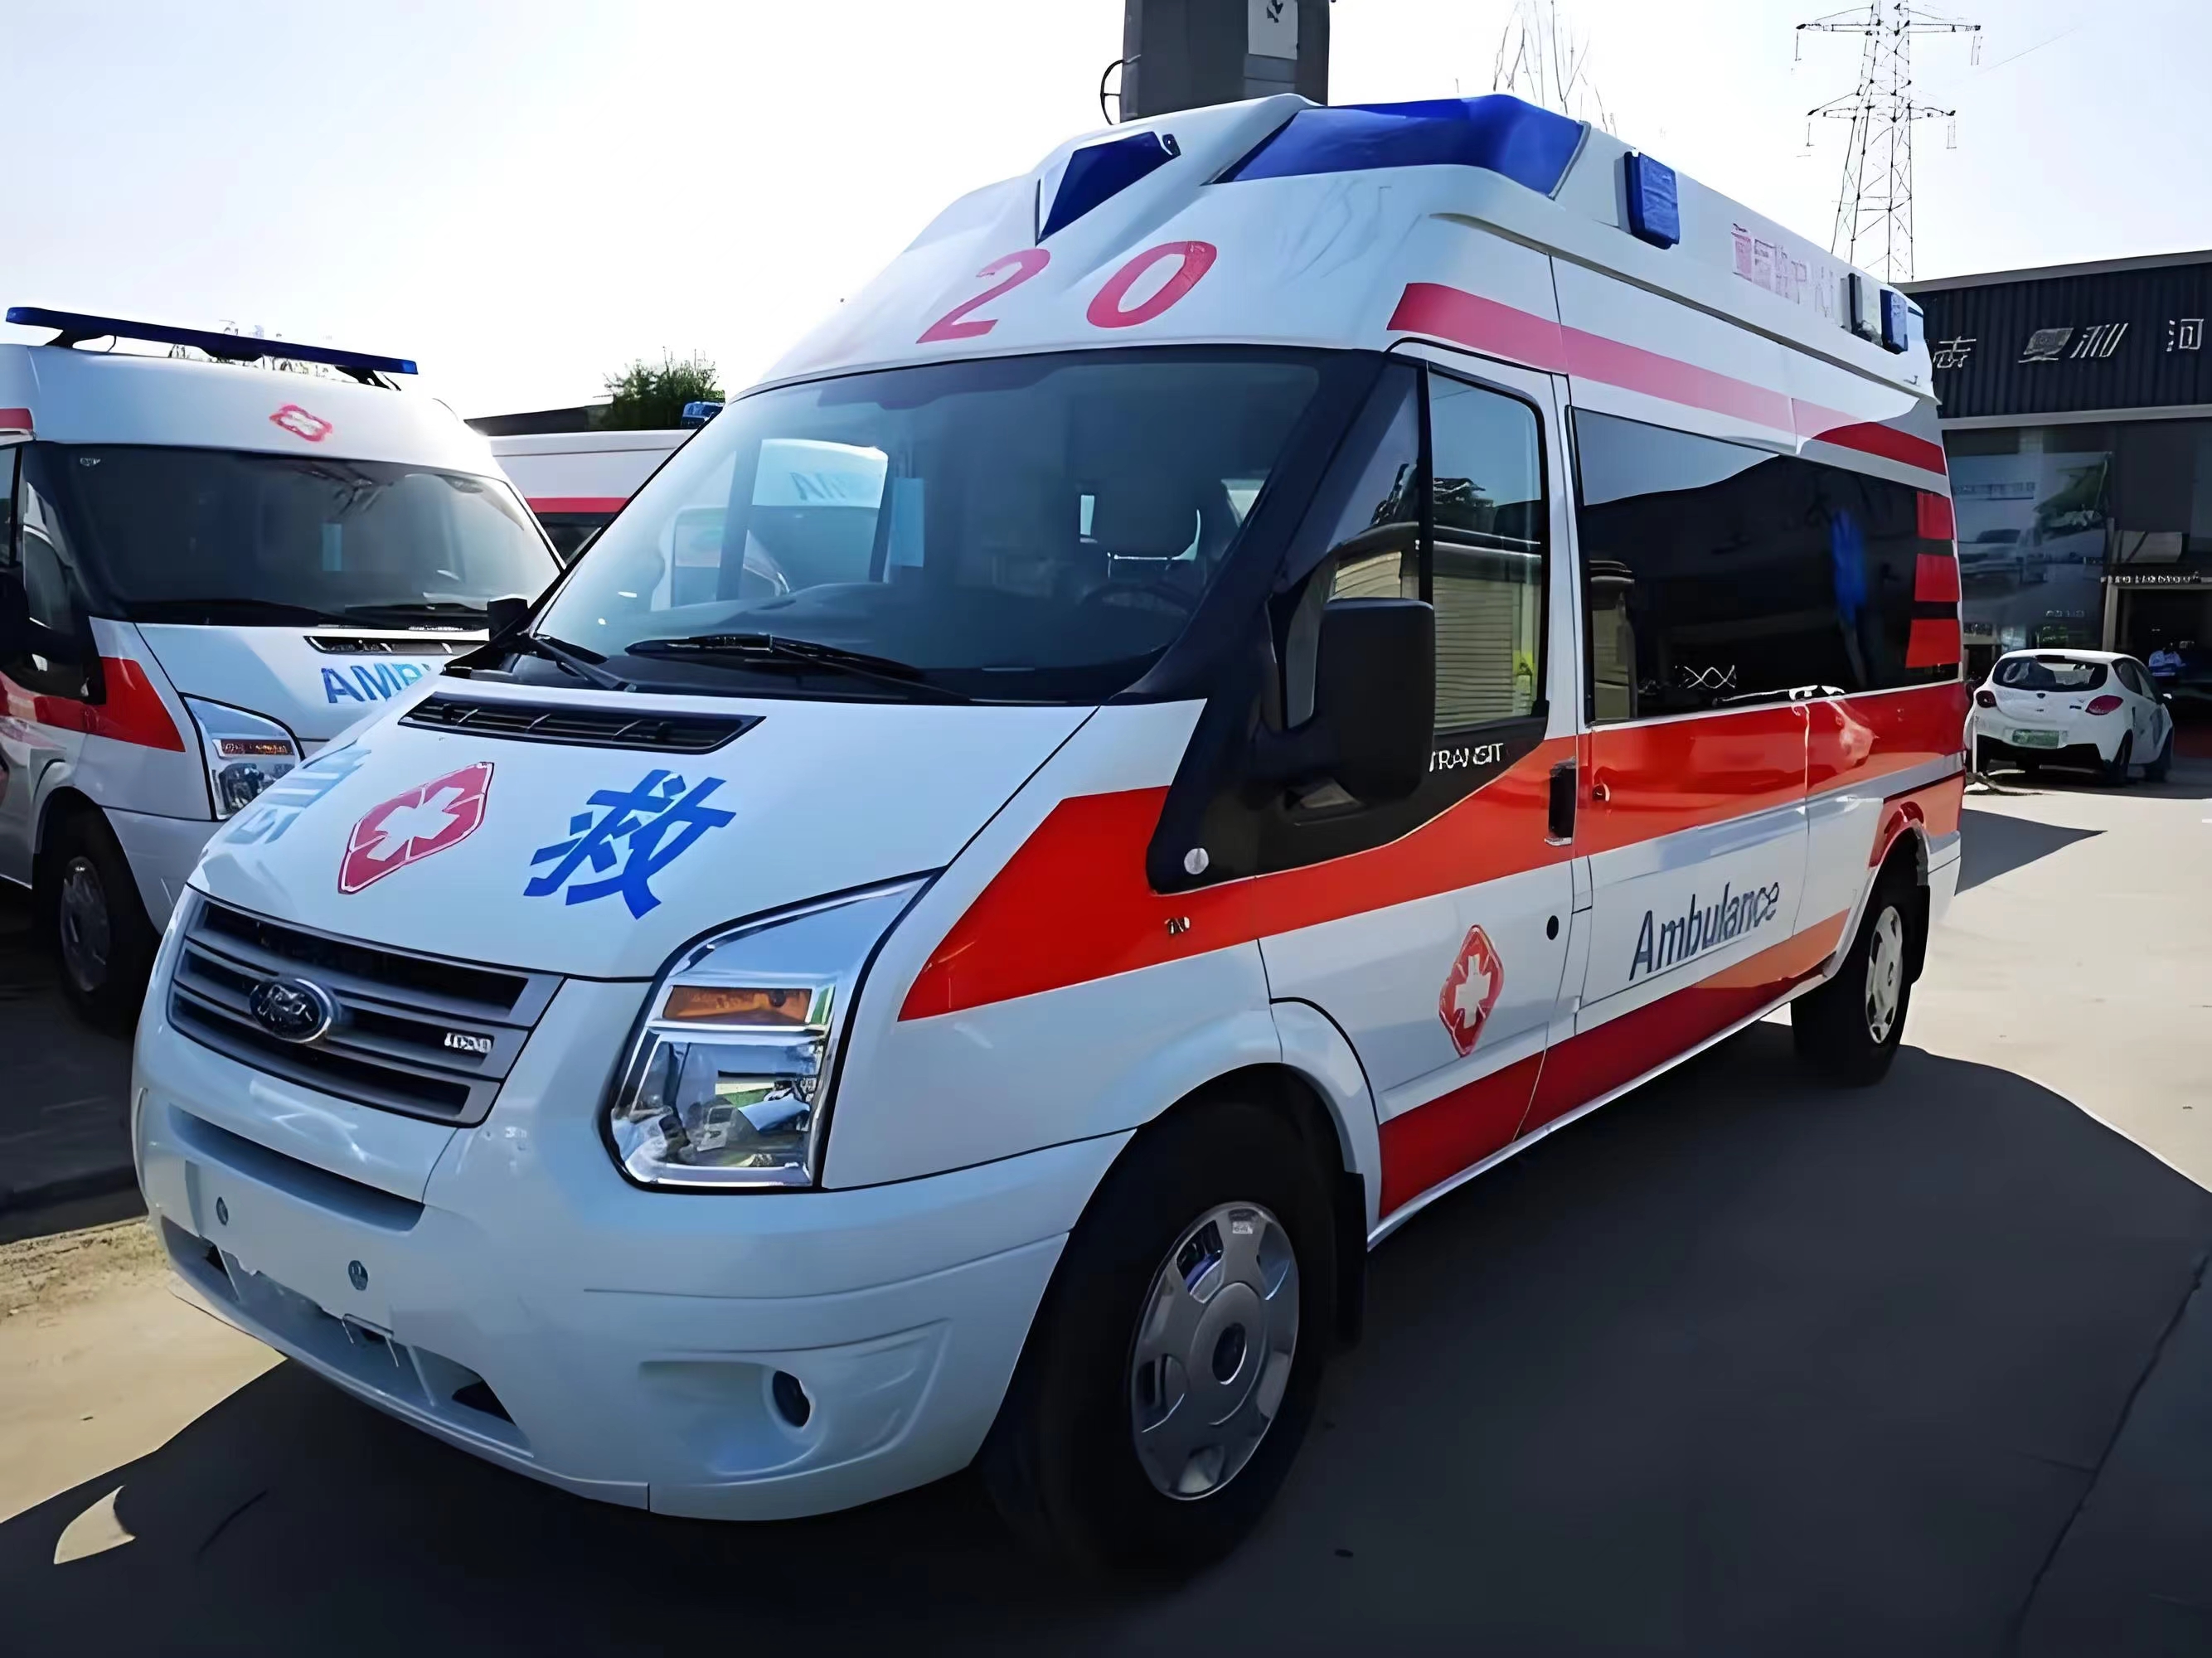 内江120救护车转运-长途救护车出租-全国救护中心